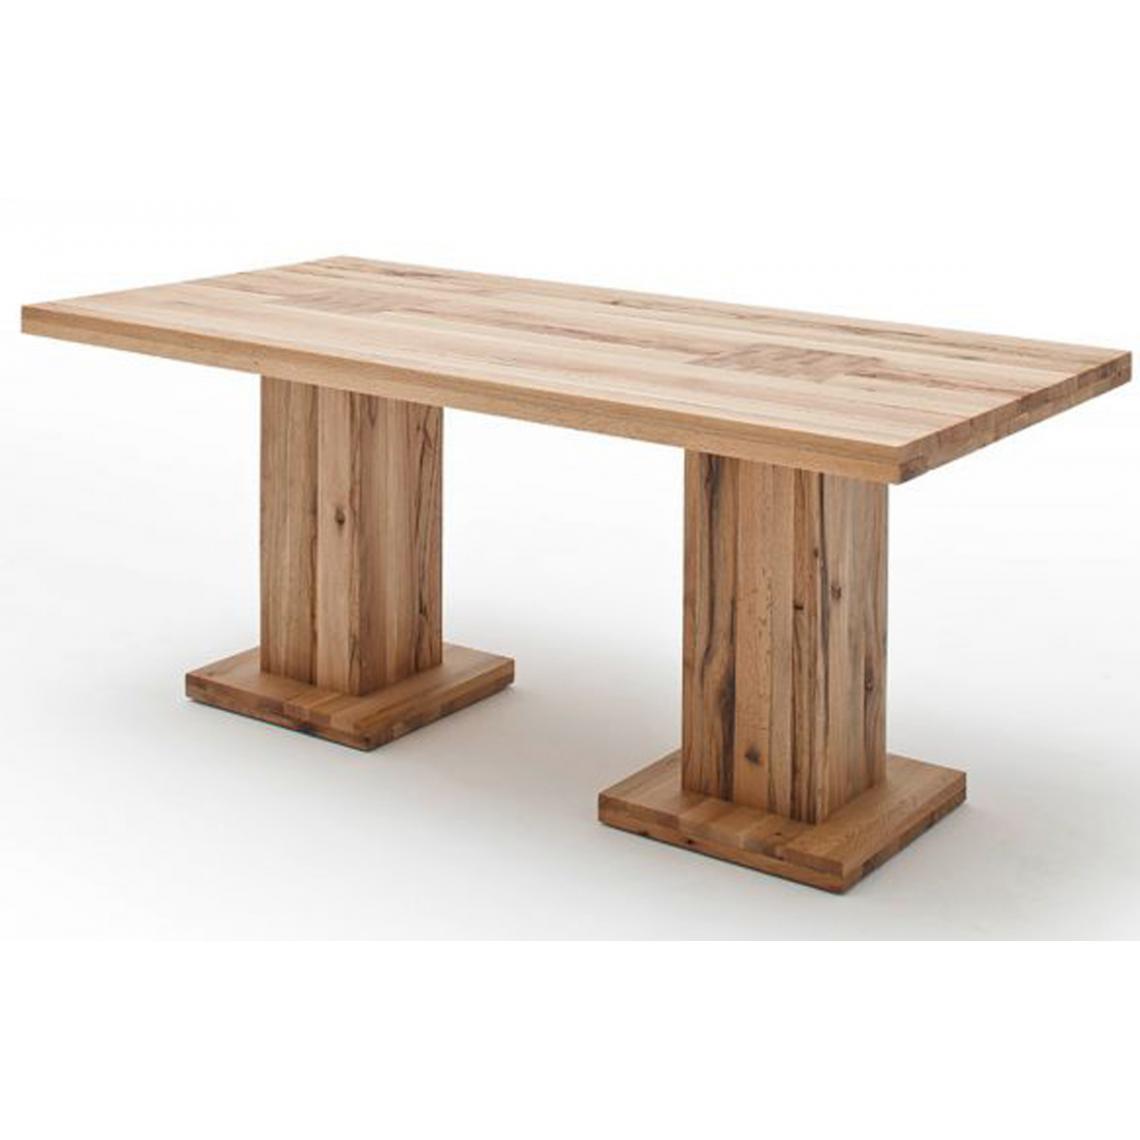 Pegane - Table à manger en chêne sauvage laqué mat, avec 2 colonnes - L.180 x H.76 x P.90 cm -PEGANE- - Tables à manger